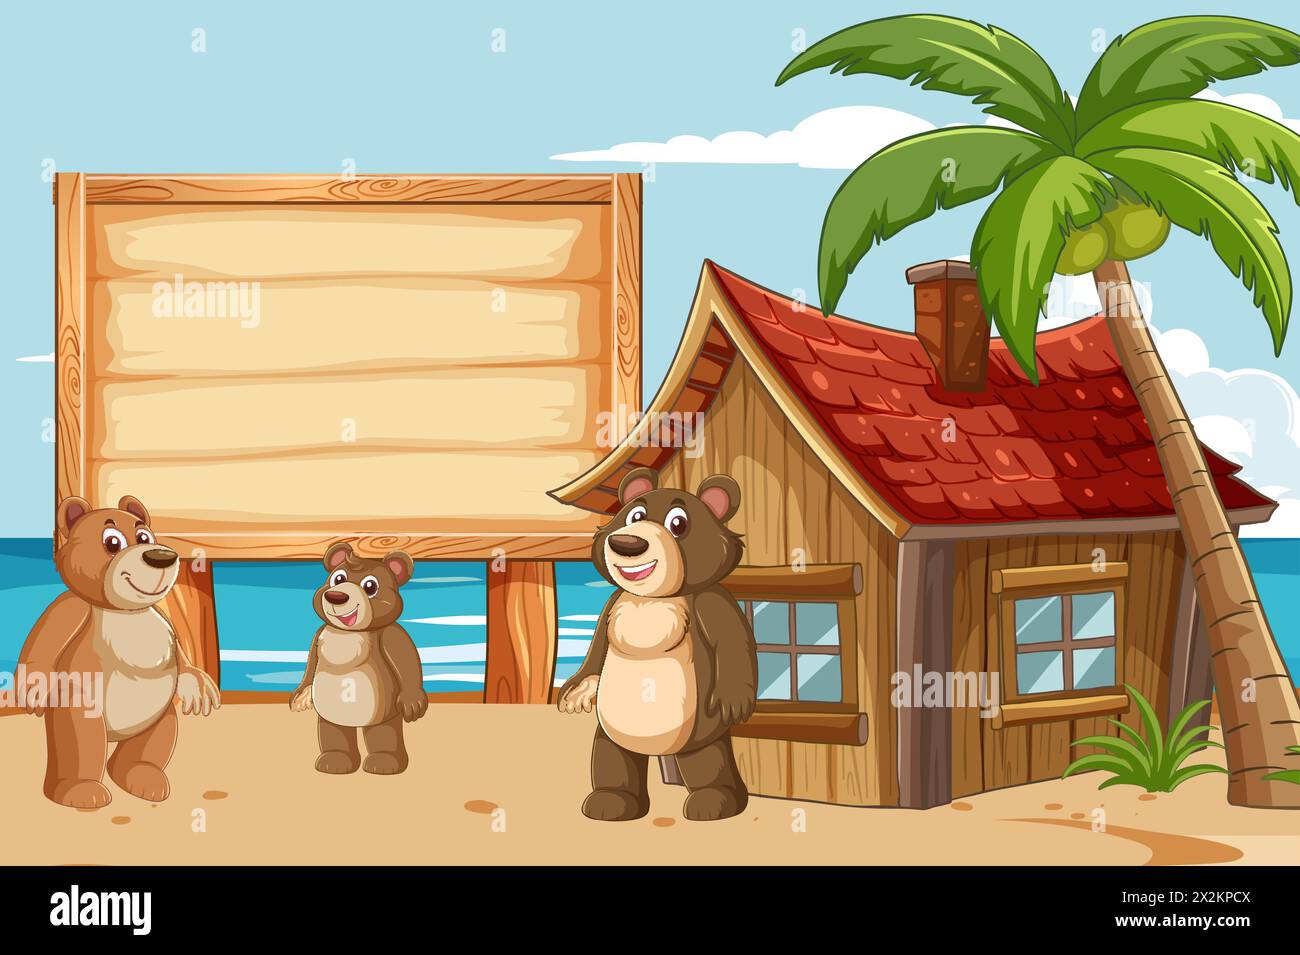 Cartoon bears near a wooden hut on the beach. Stock Vector